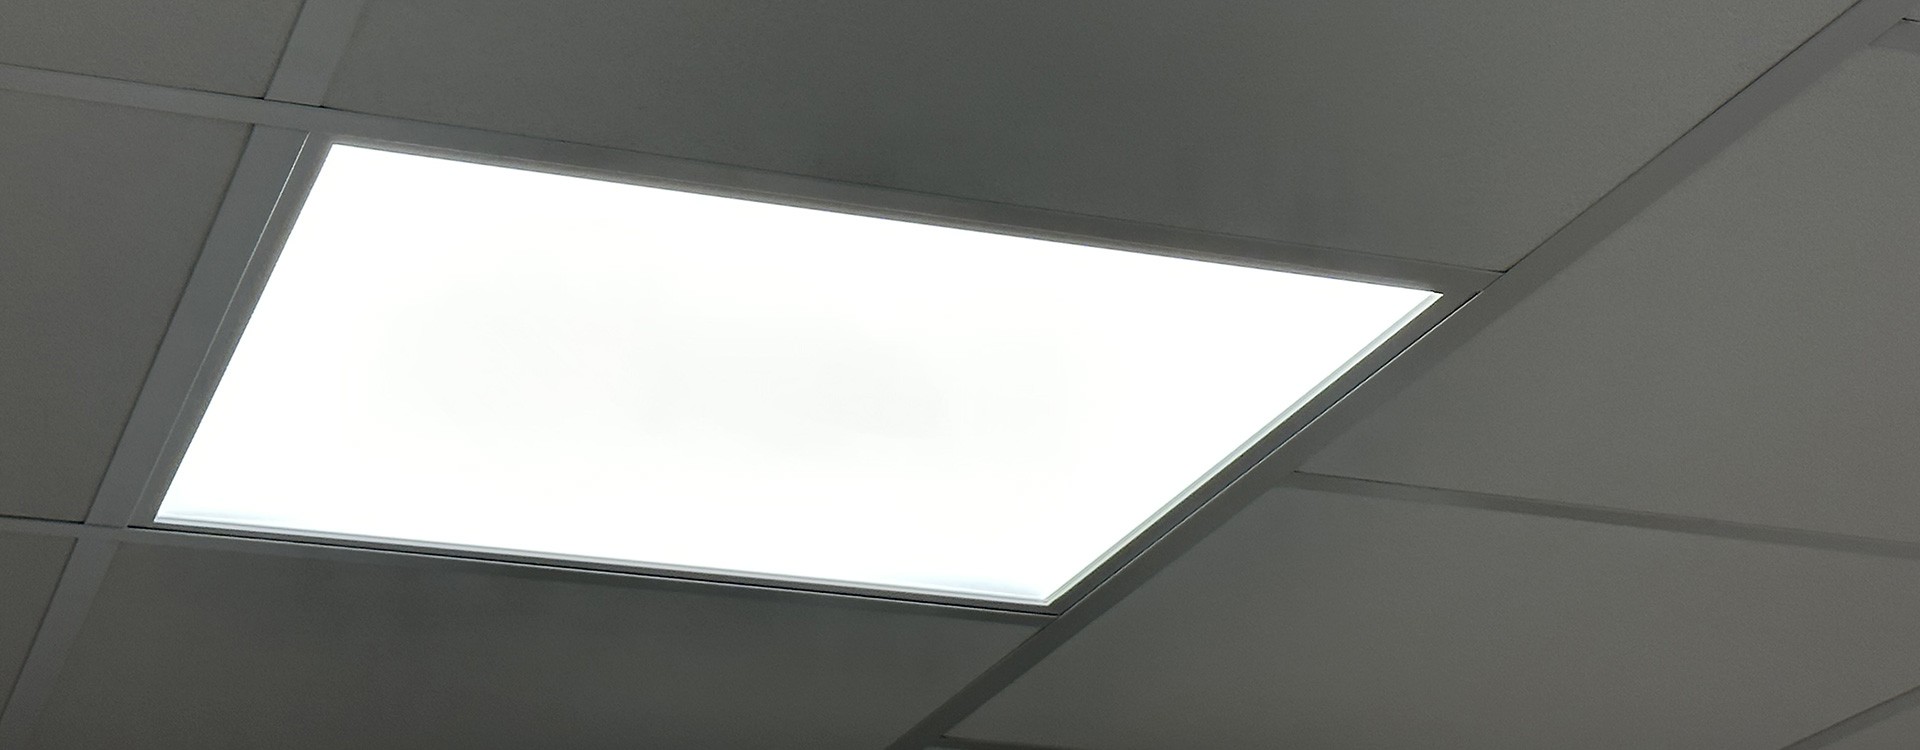 Dalle LED – Lampe-eclairage-led : Spécialiste de l'éclairage LED